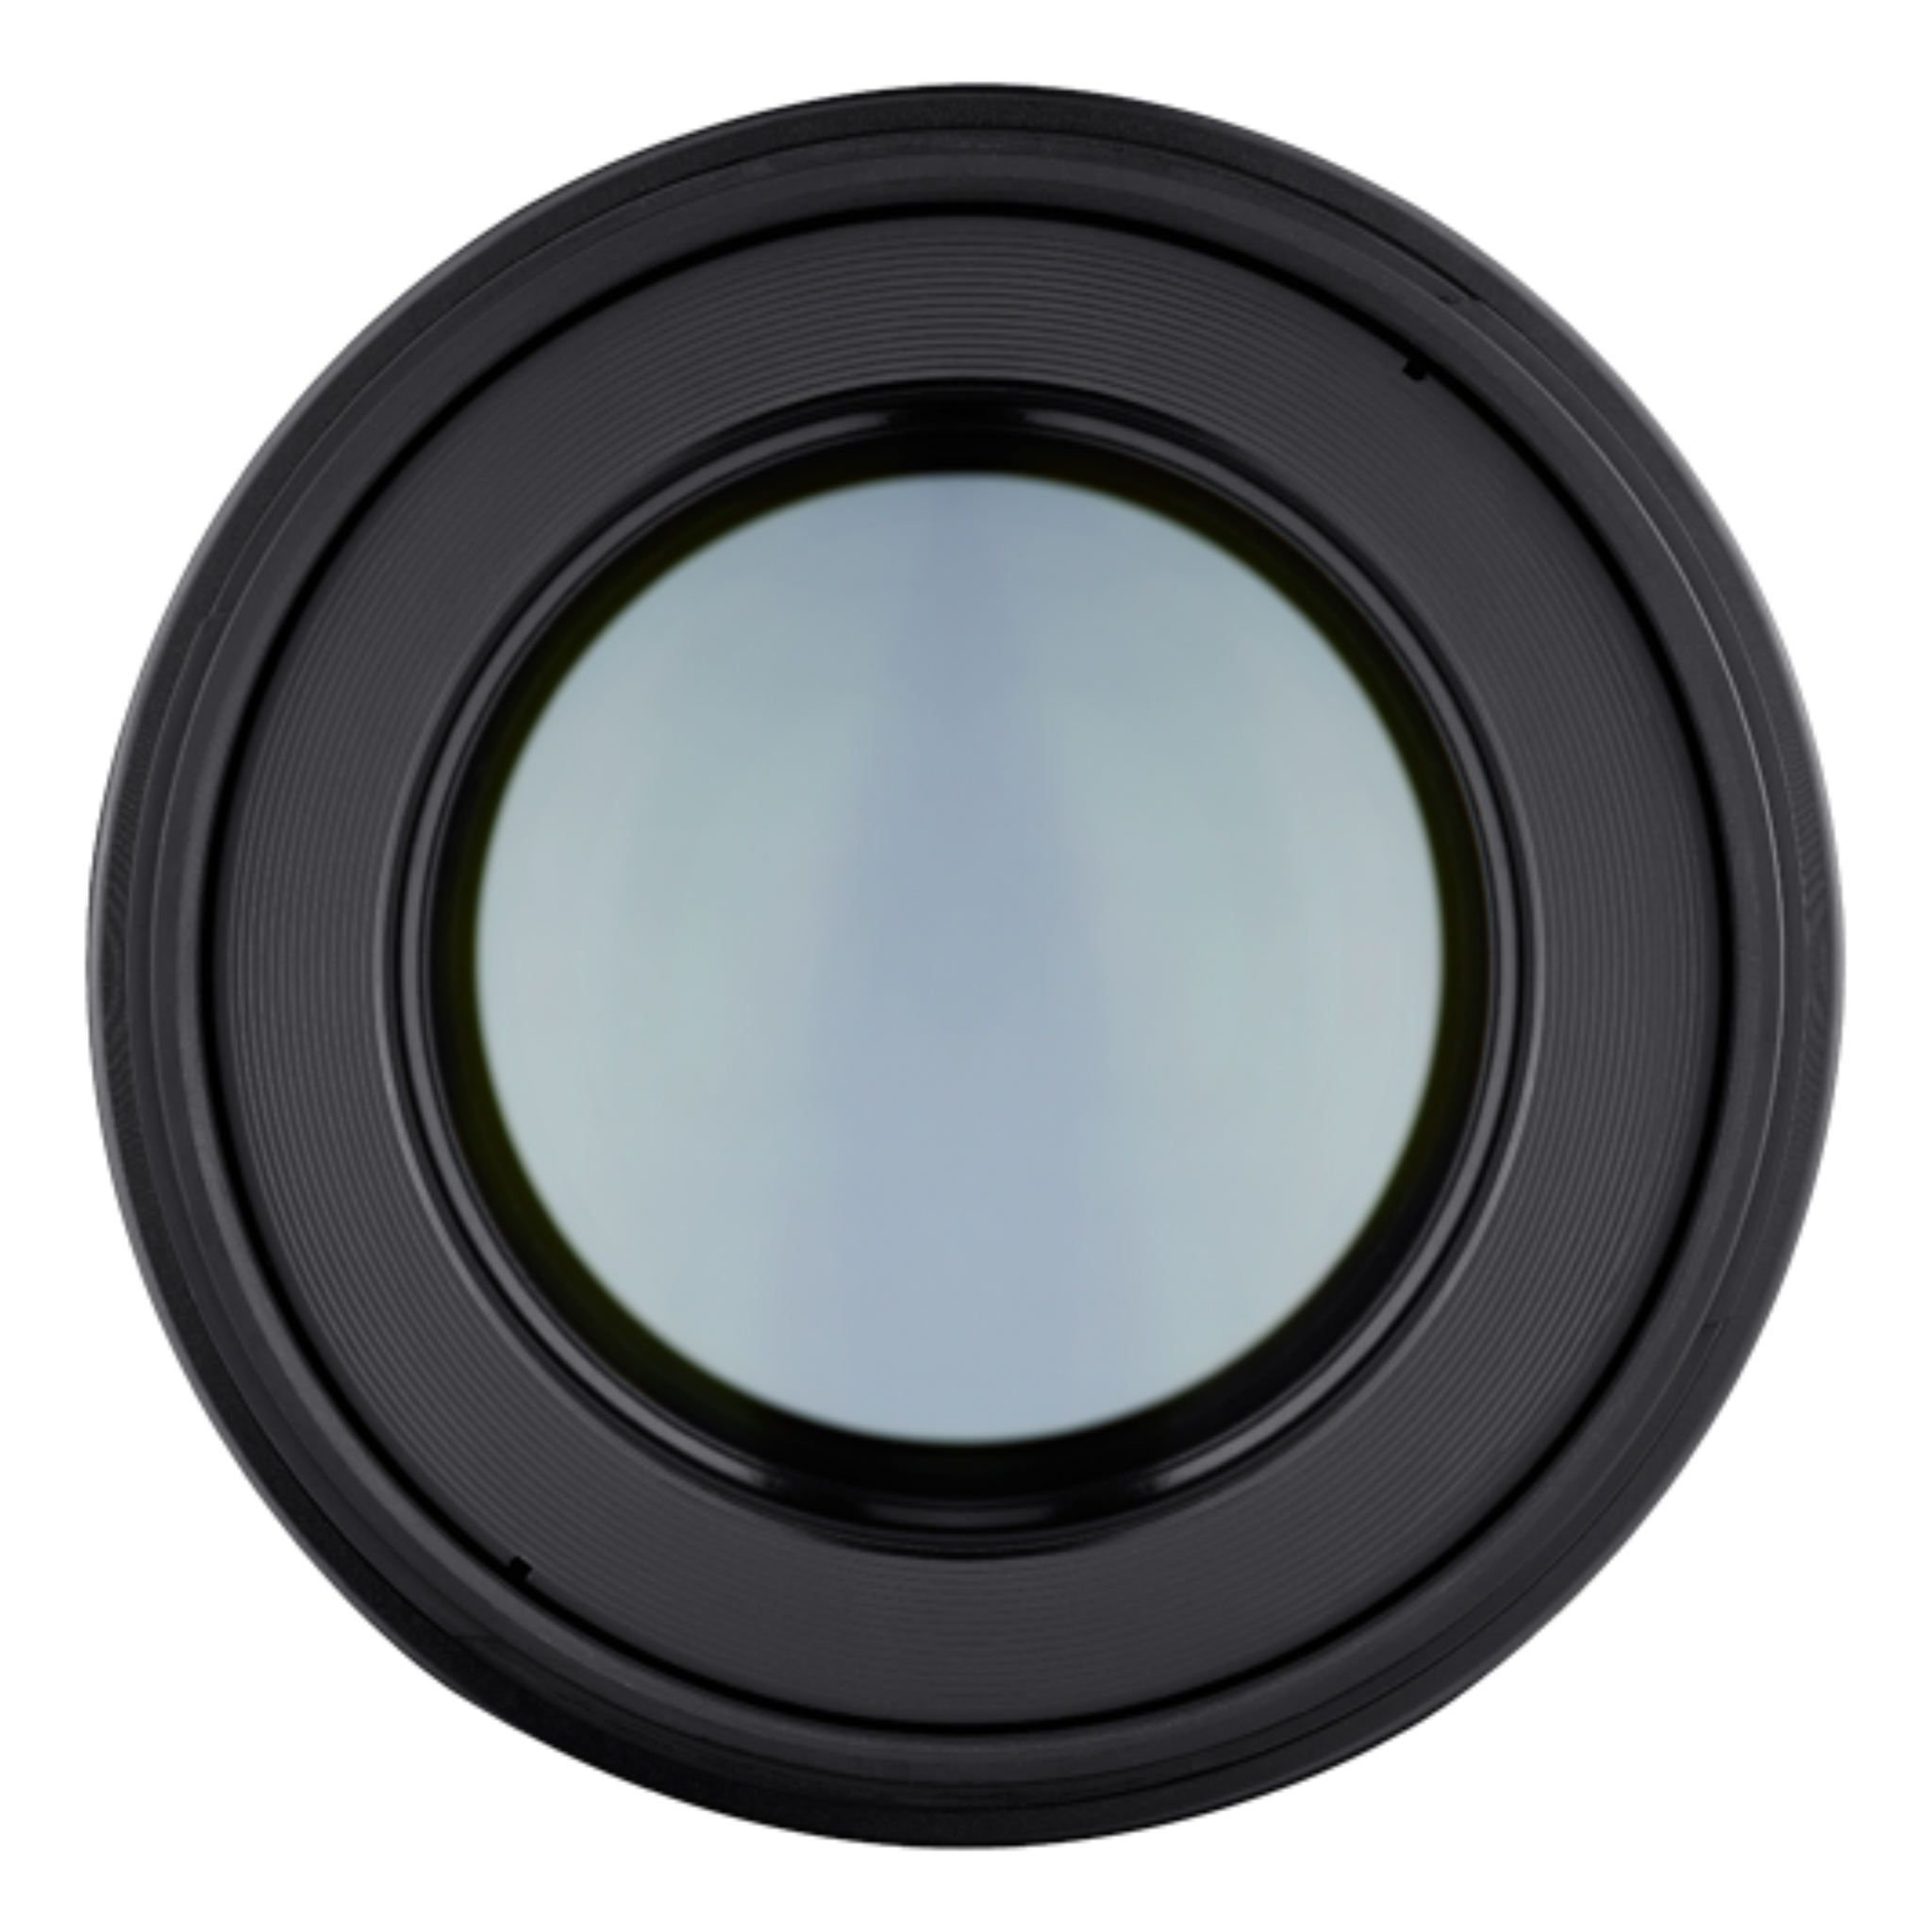 Samyang AF 85mm F1.4 EF Lens for Canon-Camera Lenses-futuromic